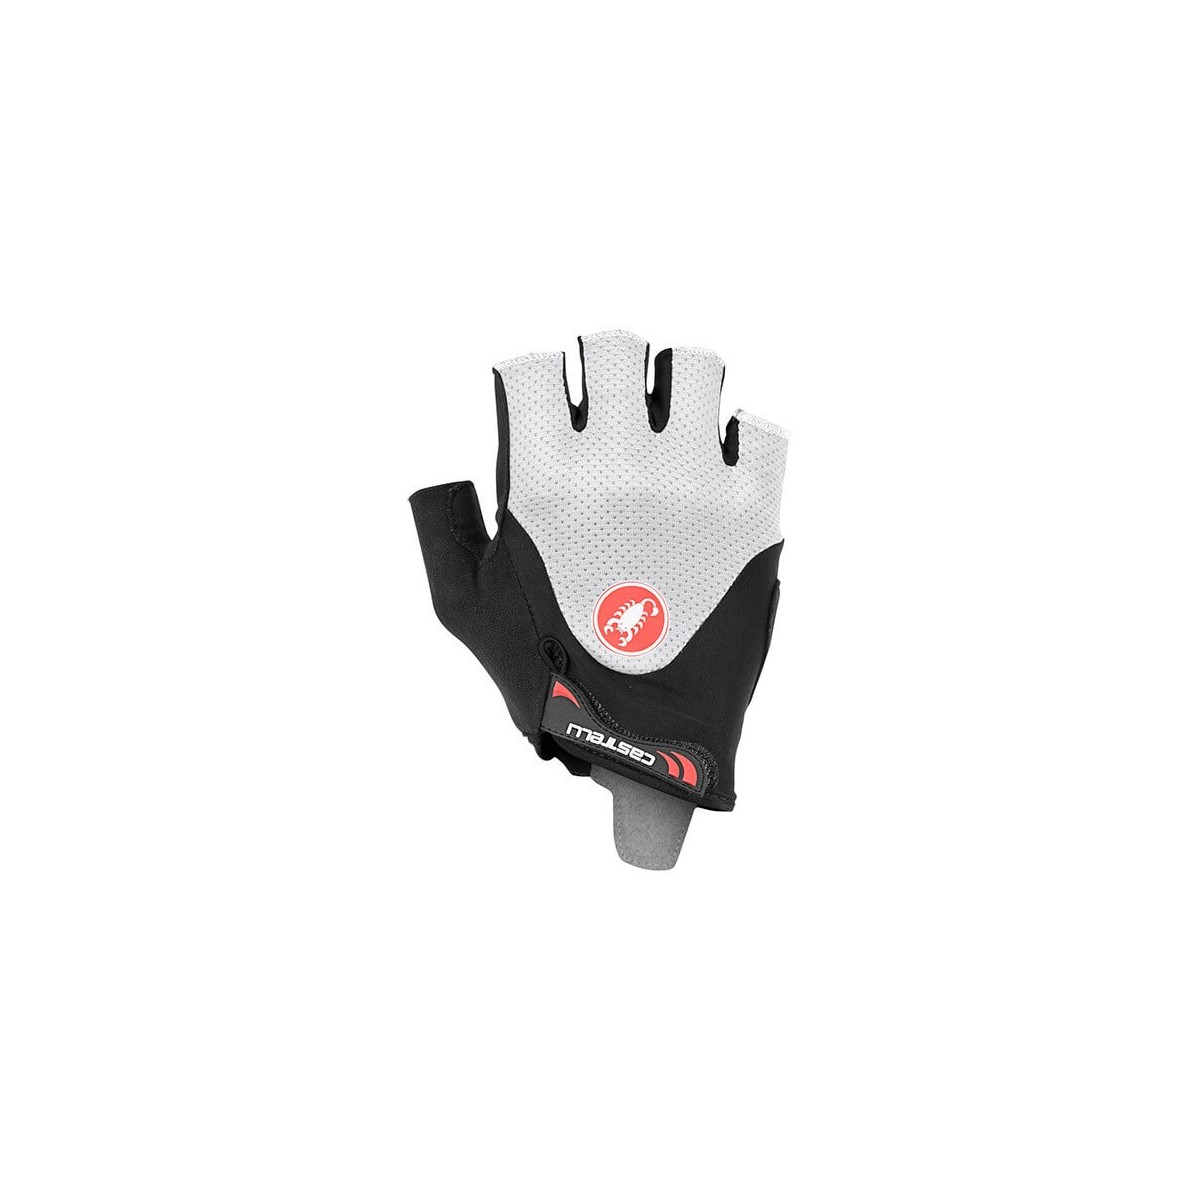 Castelli Arenberg Gel 2 Rosso Corsa Short Gloves Black White, Size S